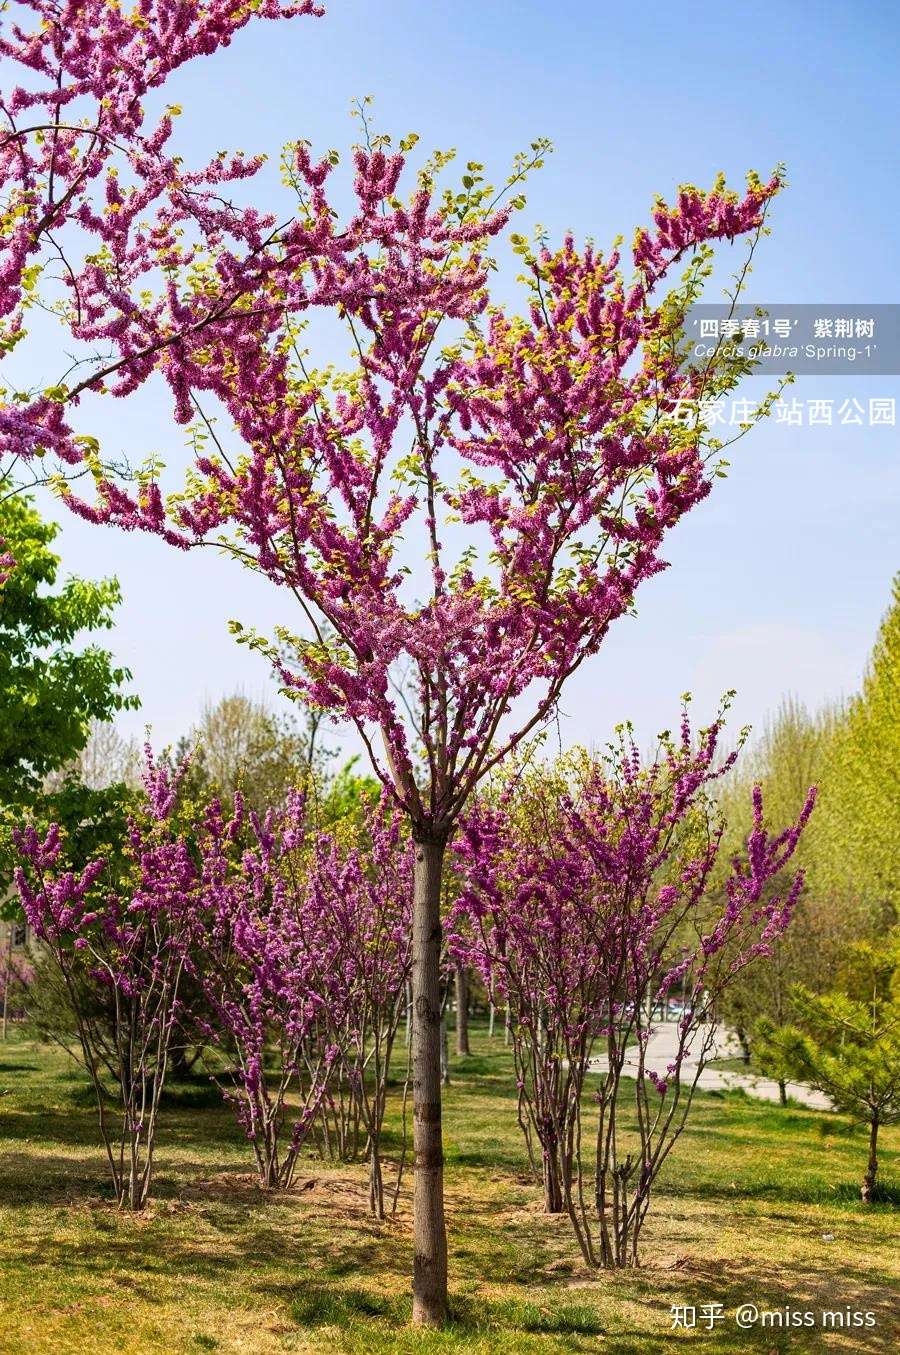 四季春1号 紫荆树园林应用实例赏析 石家庄 知乎